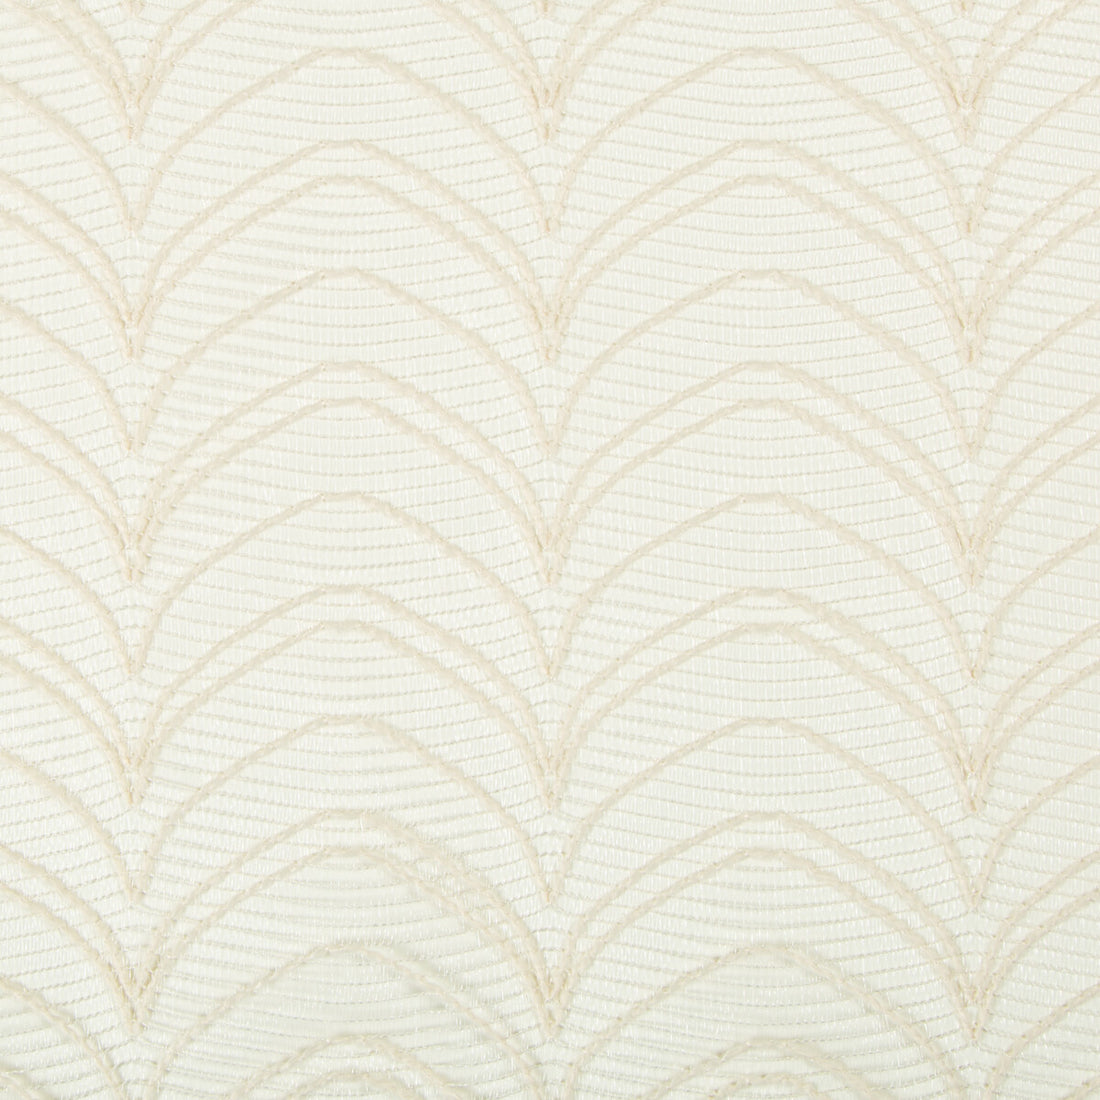 Kravet Basics fabric in 4293-16 color - pattern 4293.16.0 - by Kravet Basics